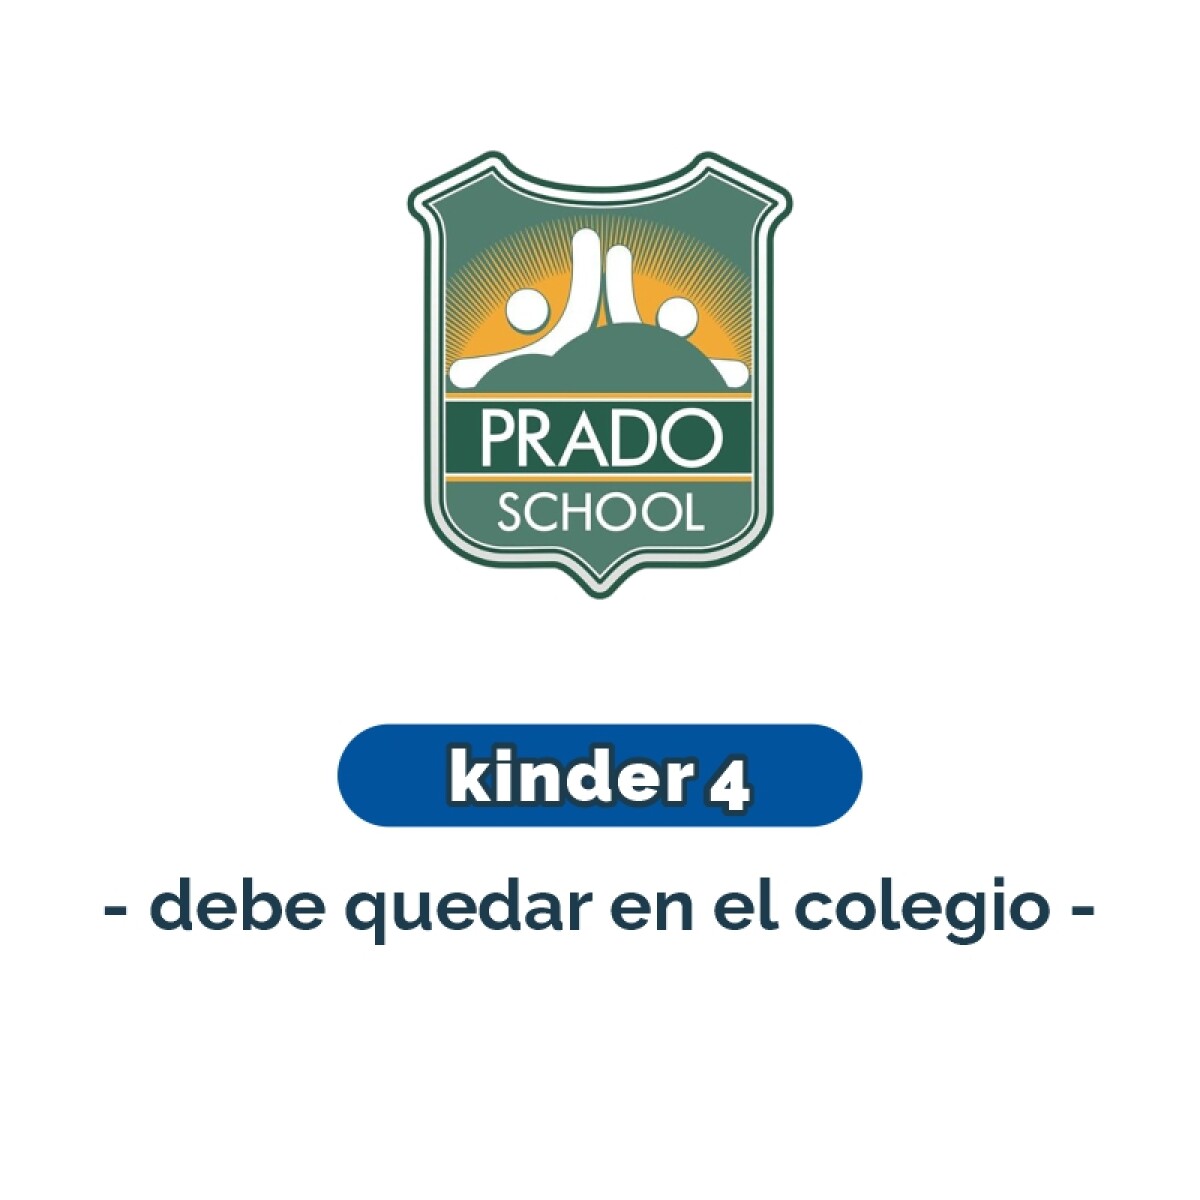 Lista de materiales - Kinder 4 debe quedar en el colegio Prado School 